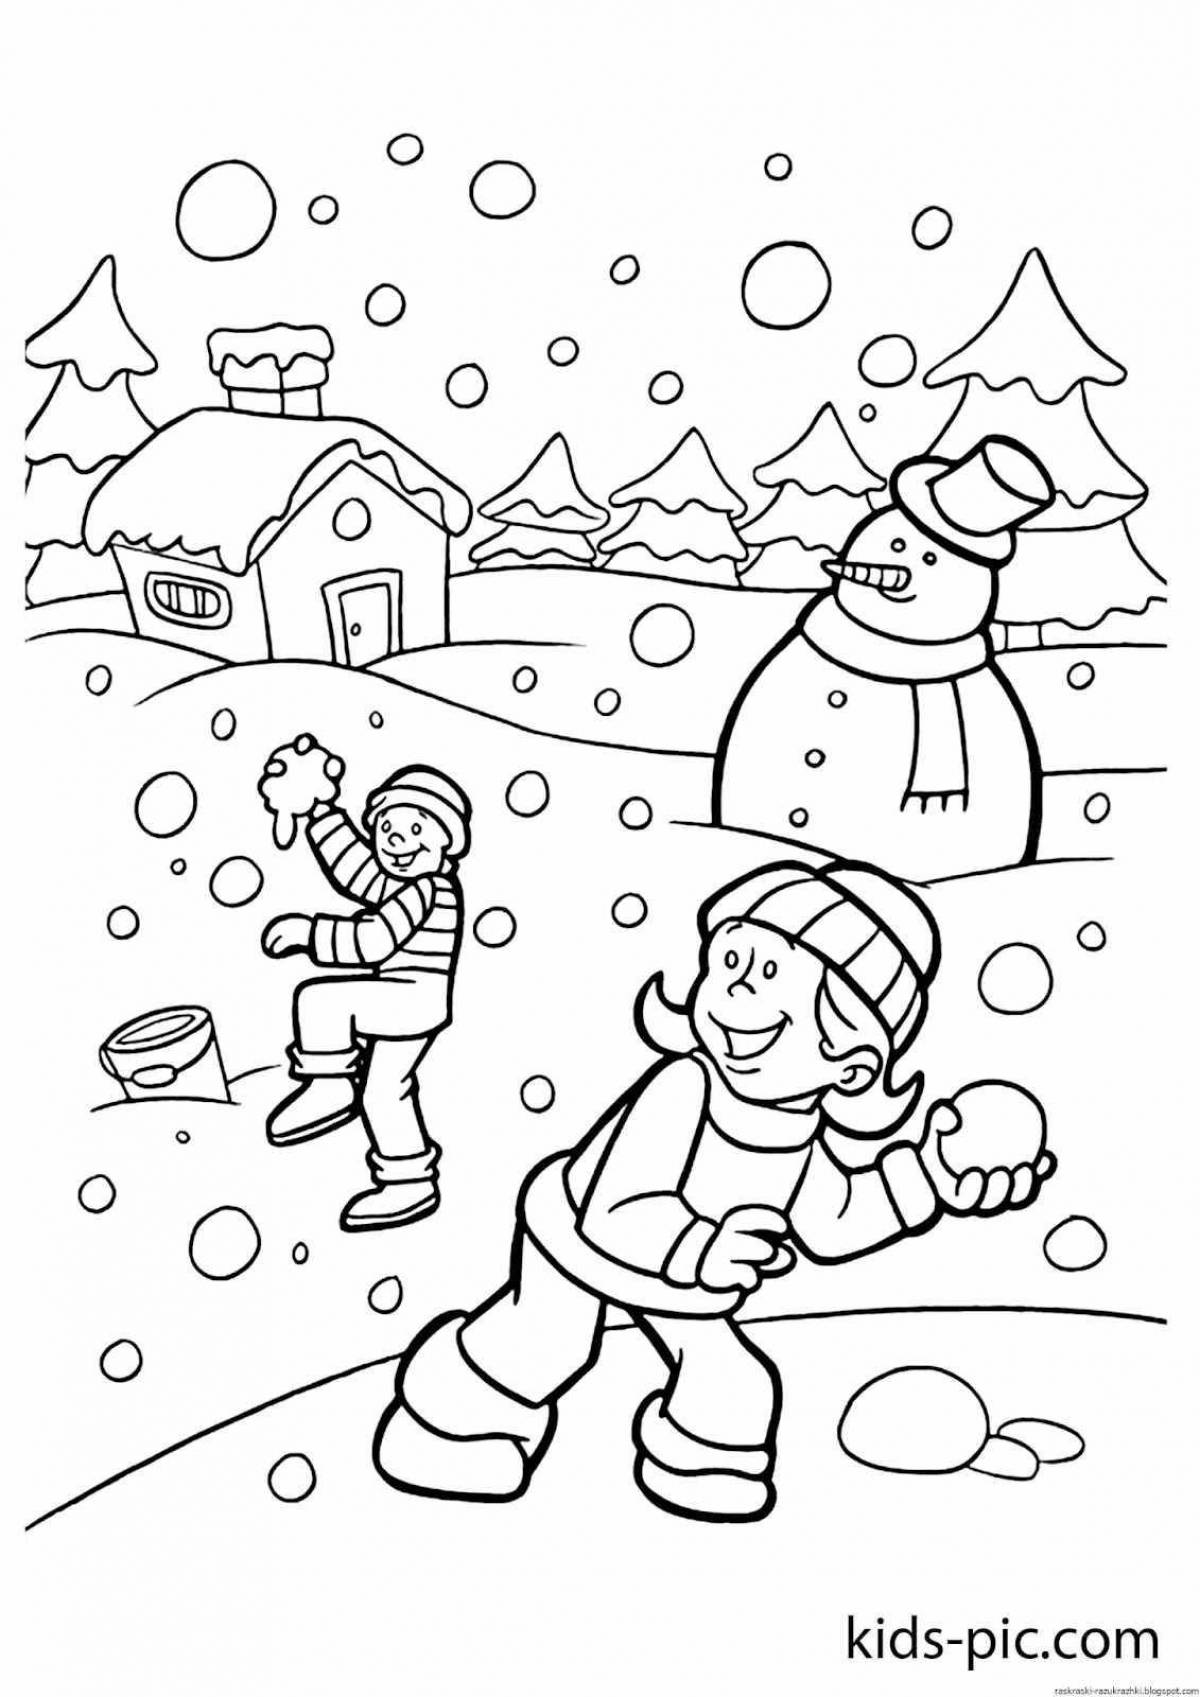 Яркая раскраска зимние забавы для детей в детском саду